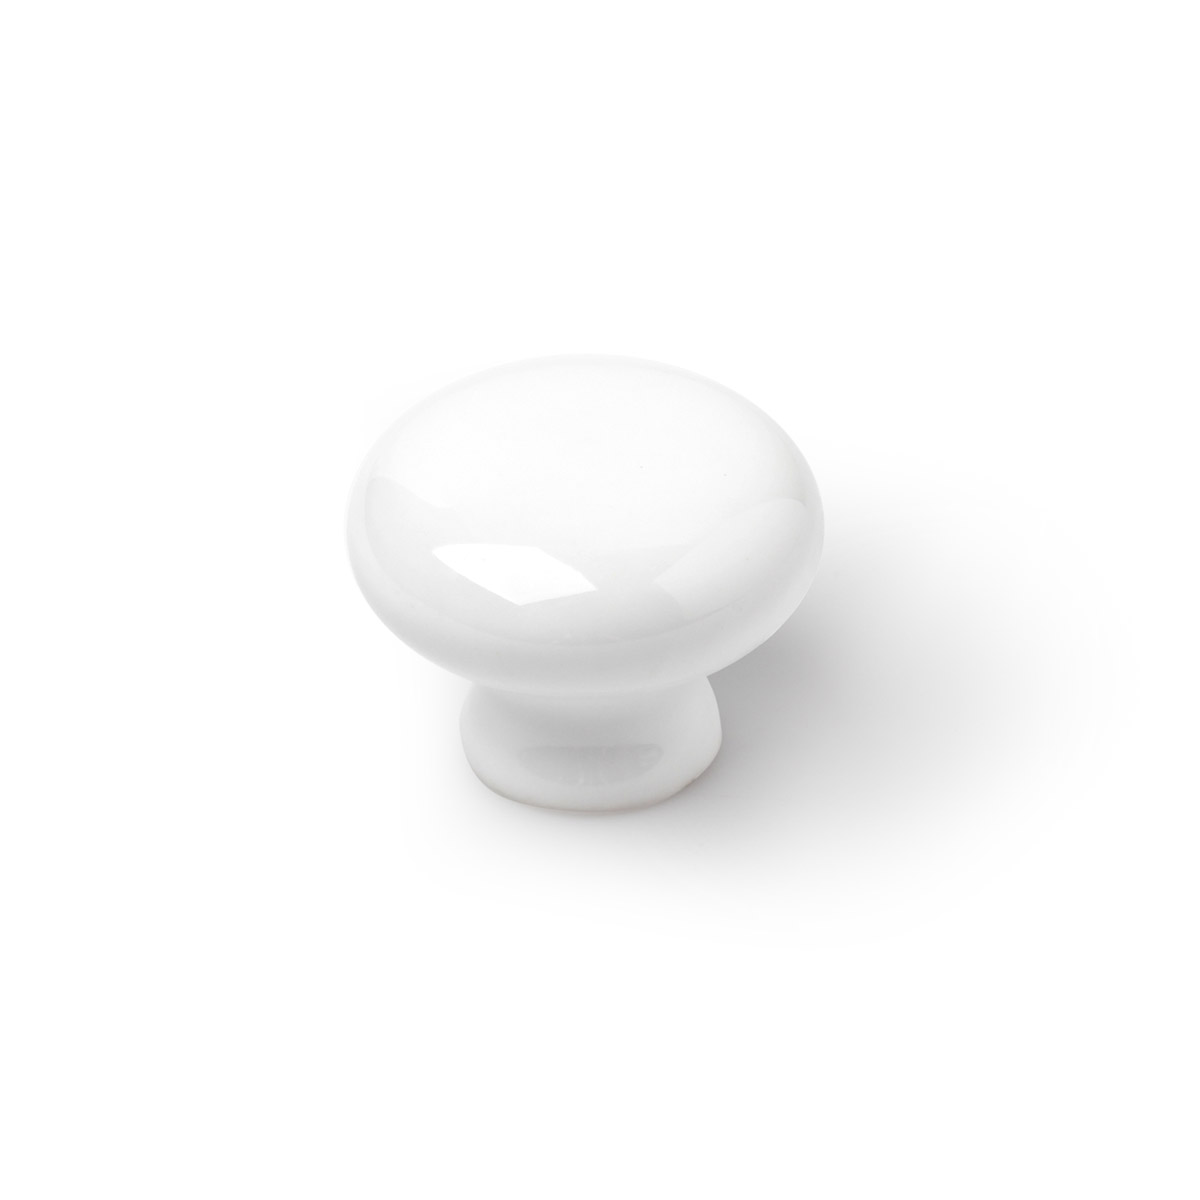 Blister con 6 pomos de porcelana blanco, dimensiones: 35x35x26mm, ø: 35 mm